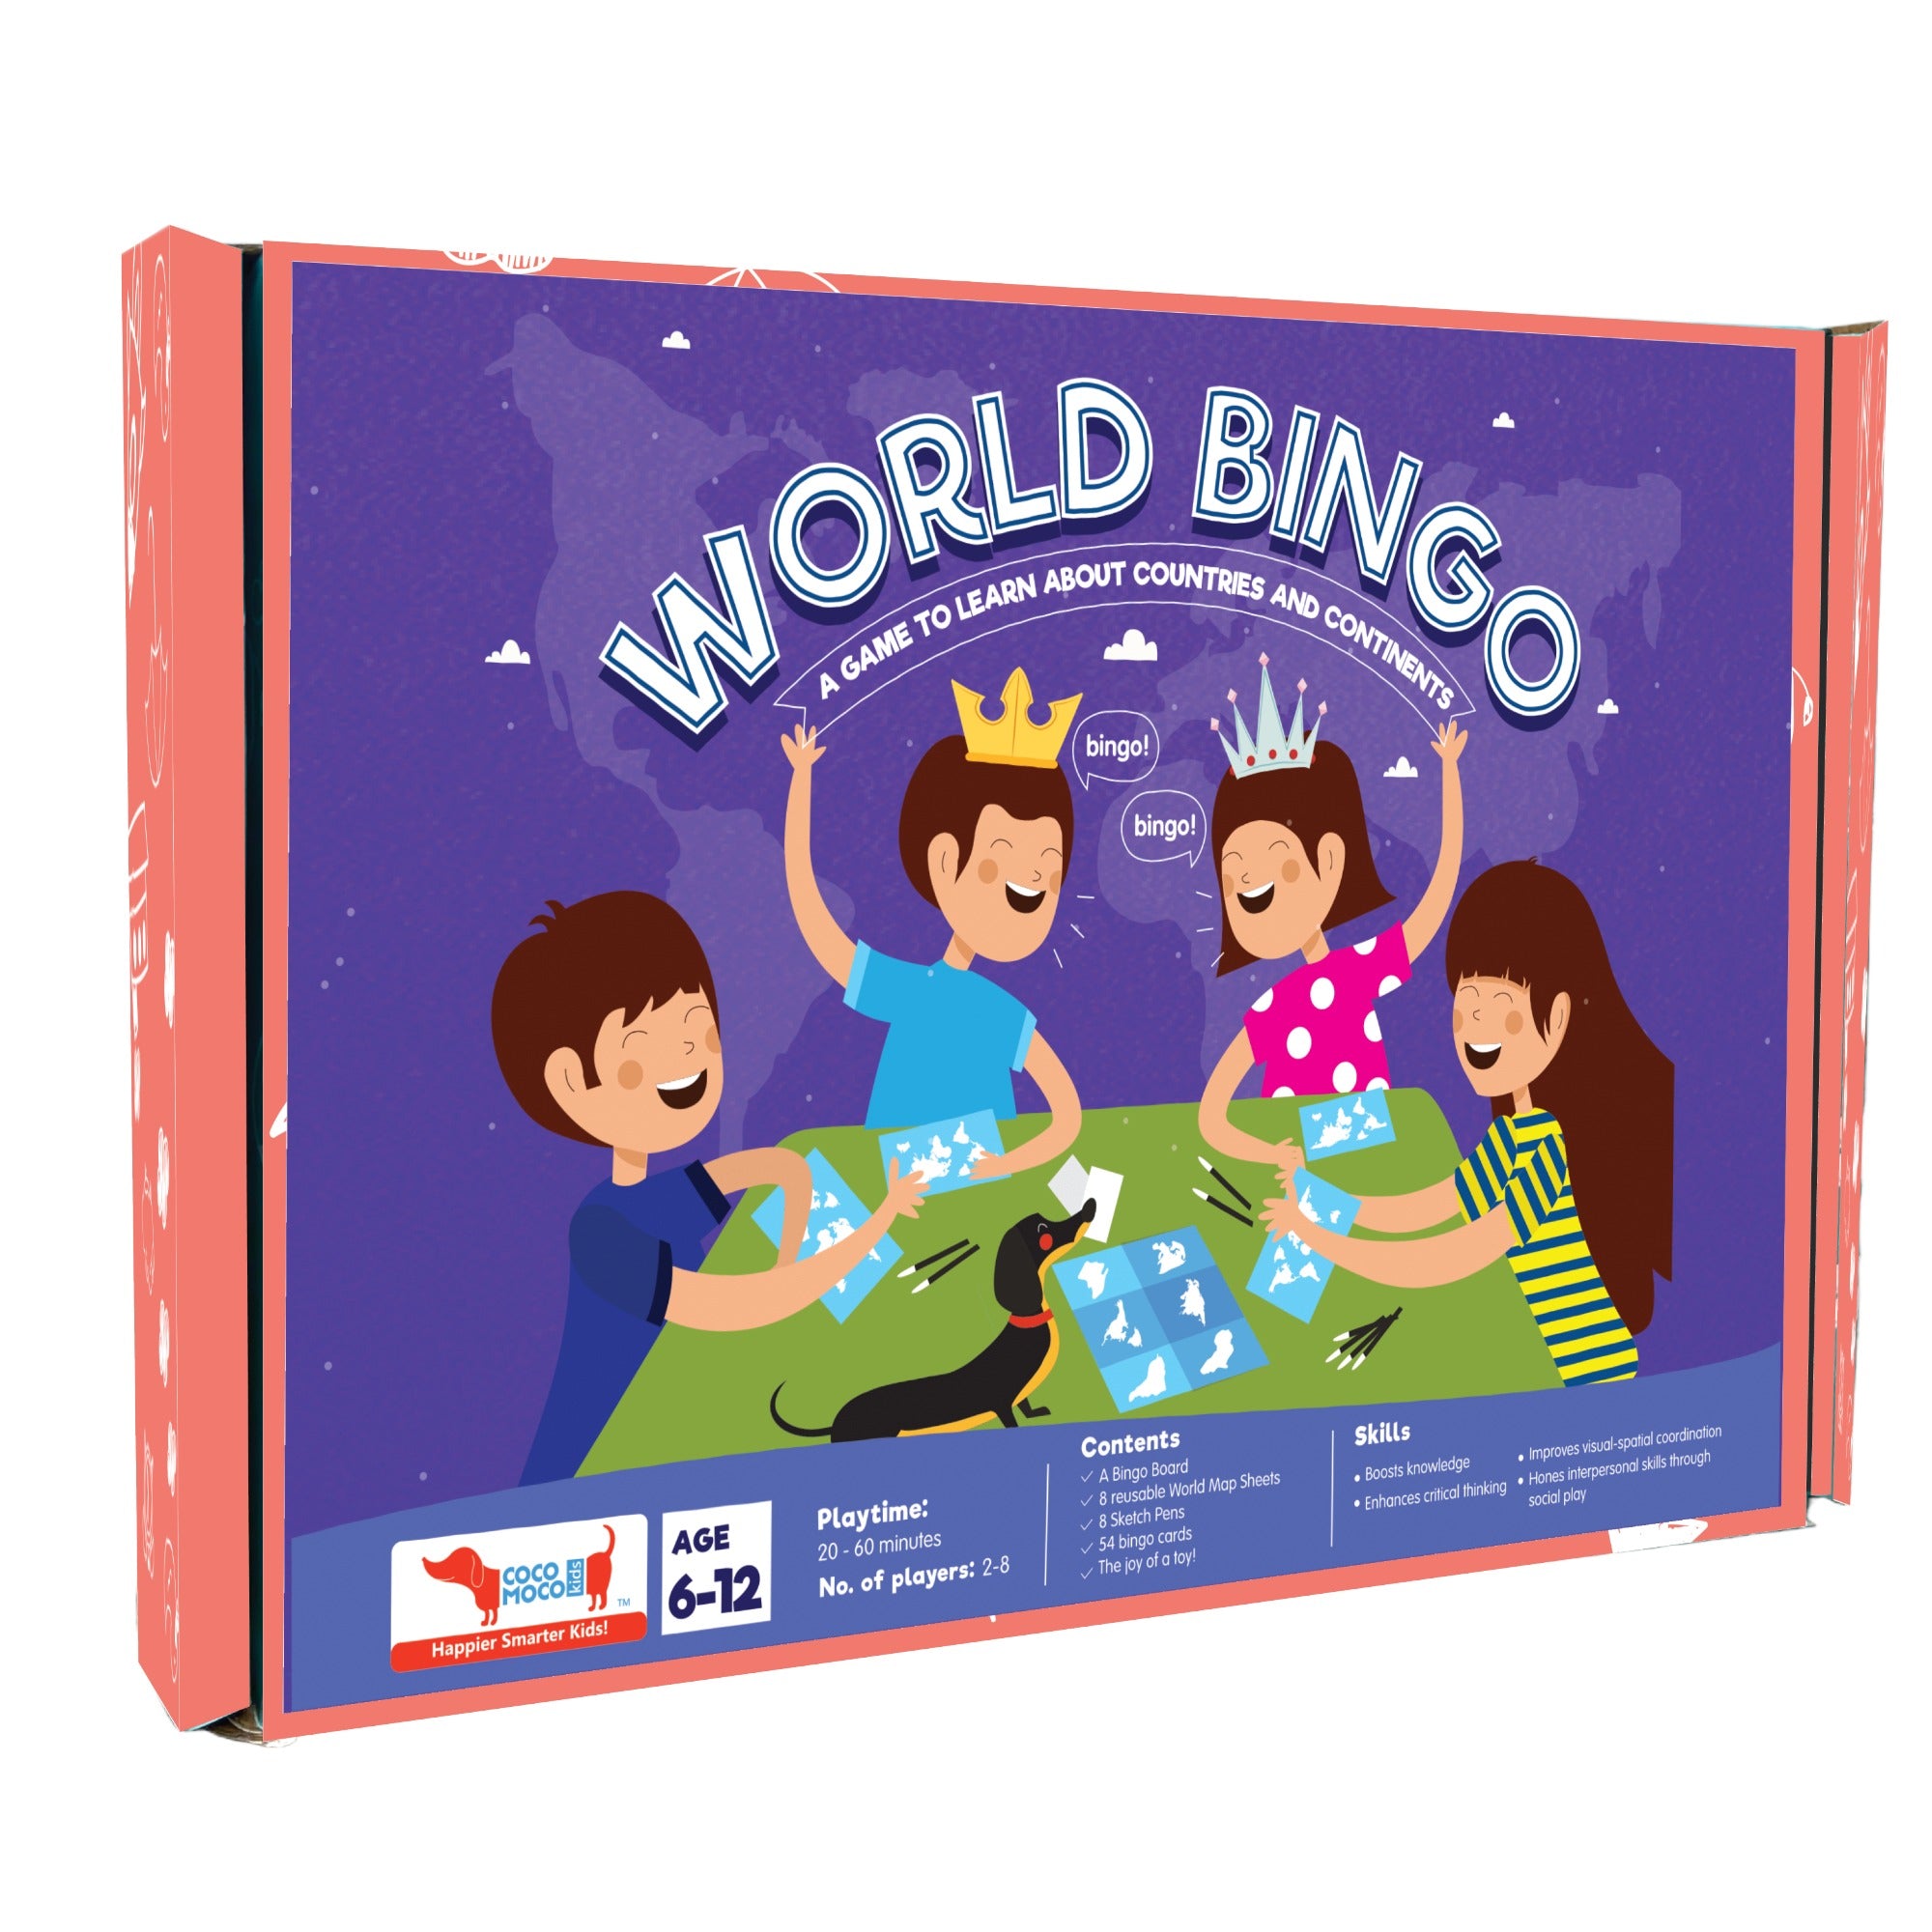 CocoMoco Kids World Bingo